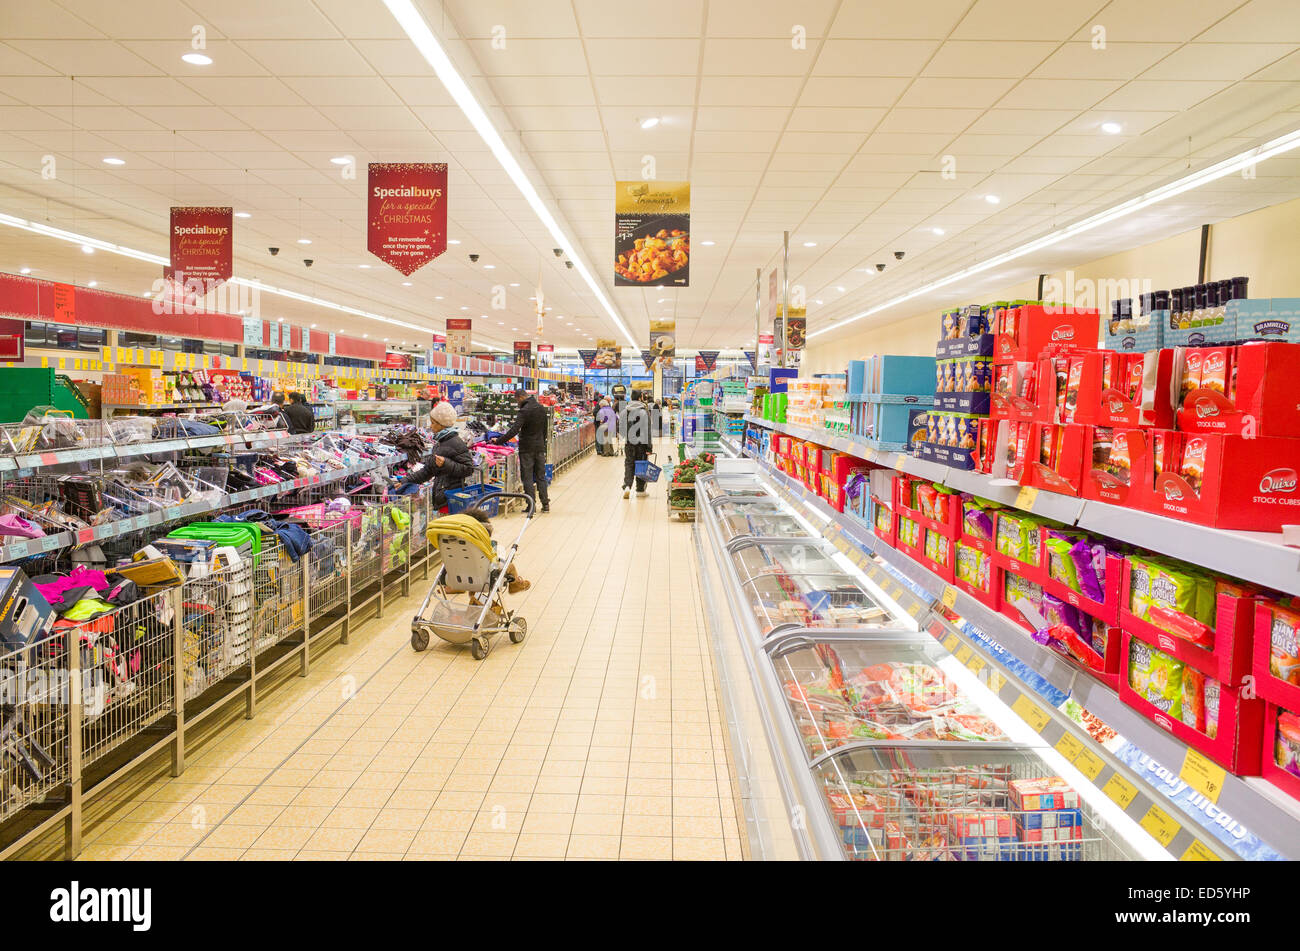 Aldi supermarket aisle, London, England, UK Stock Photo